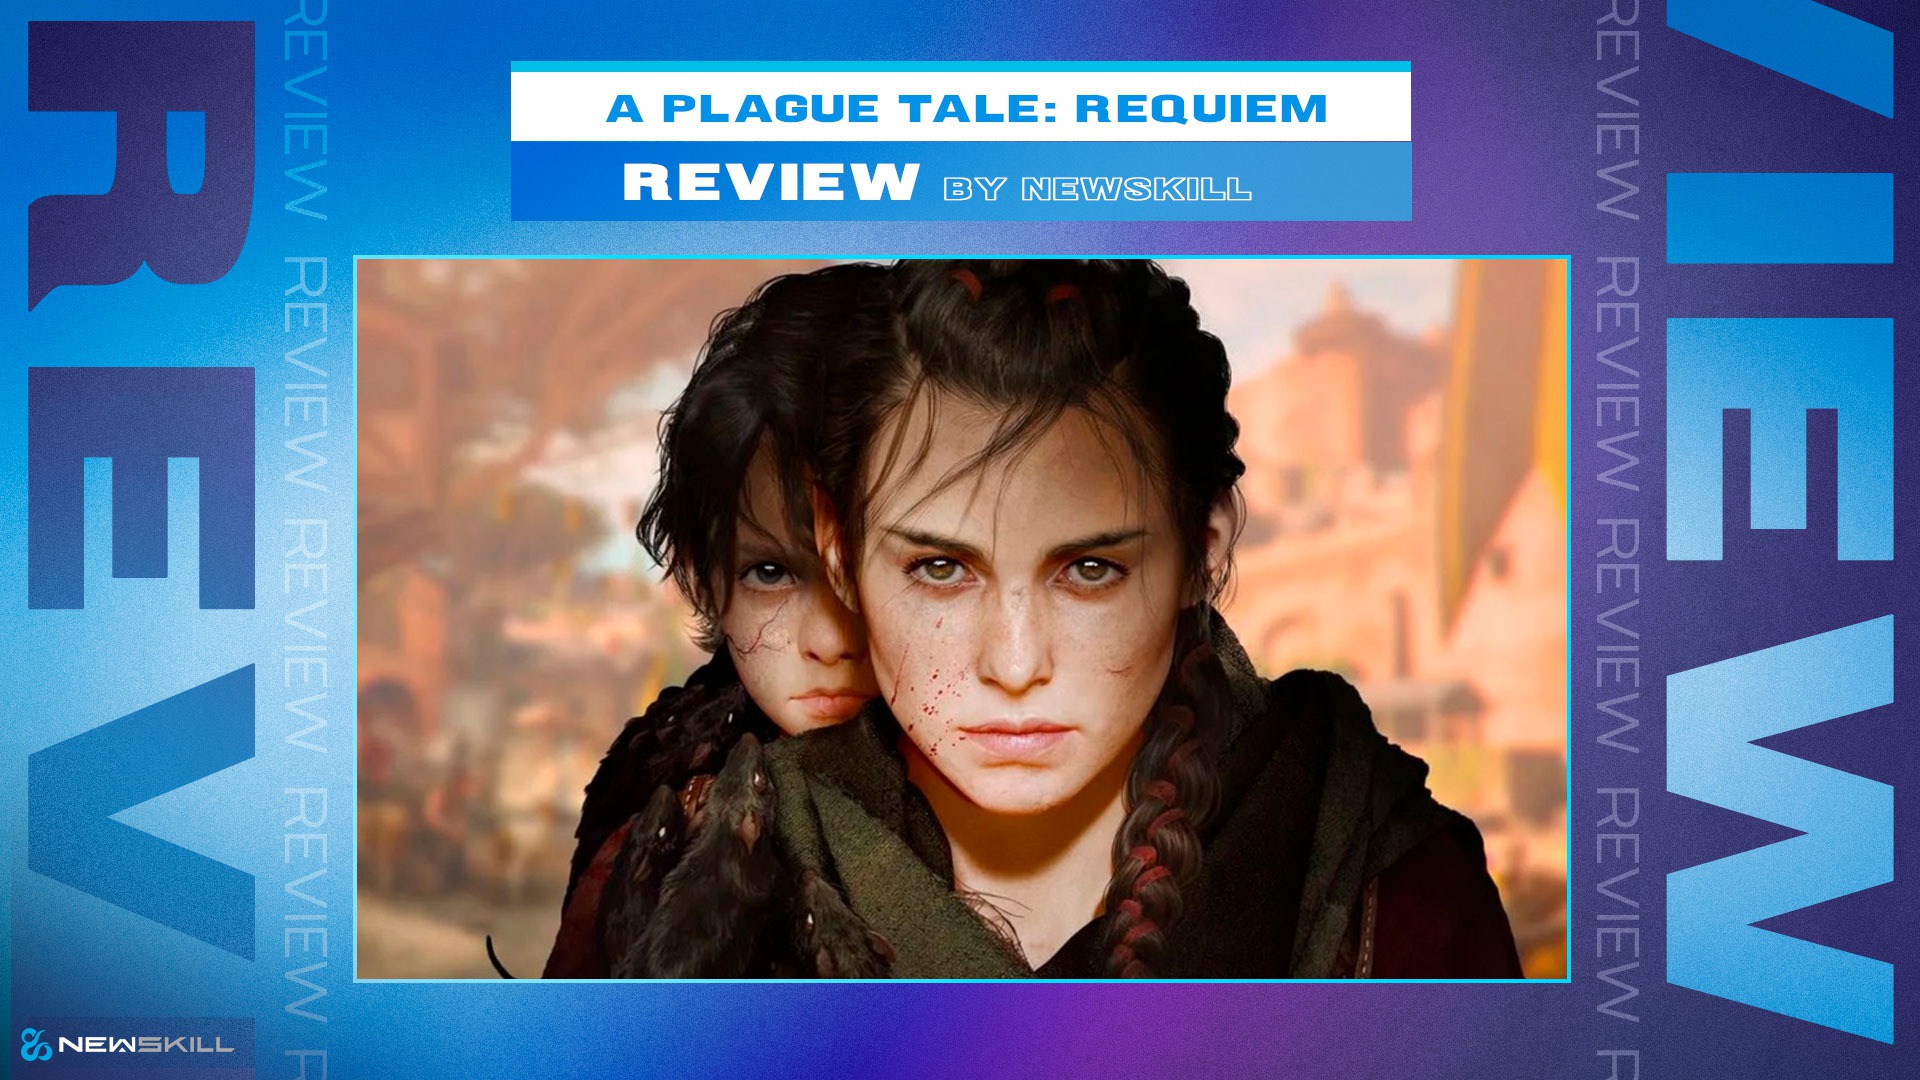 Análisis de A Plague Tale: Requiem: un vínculo irrompible